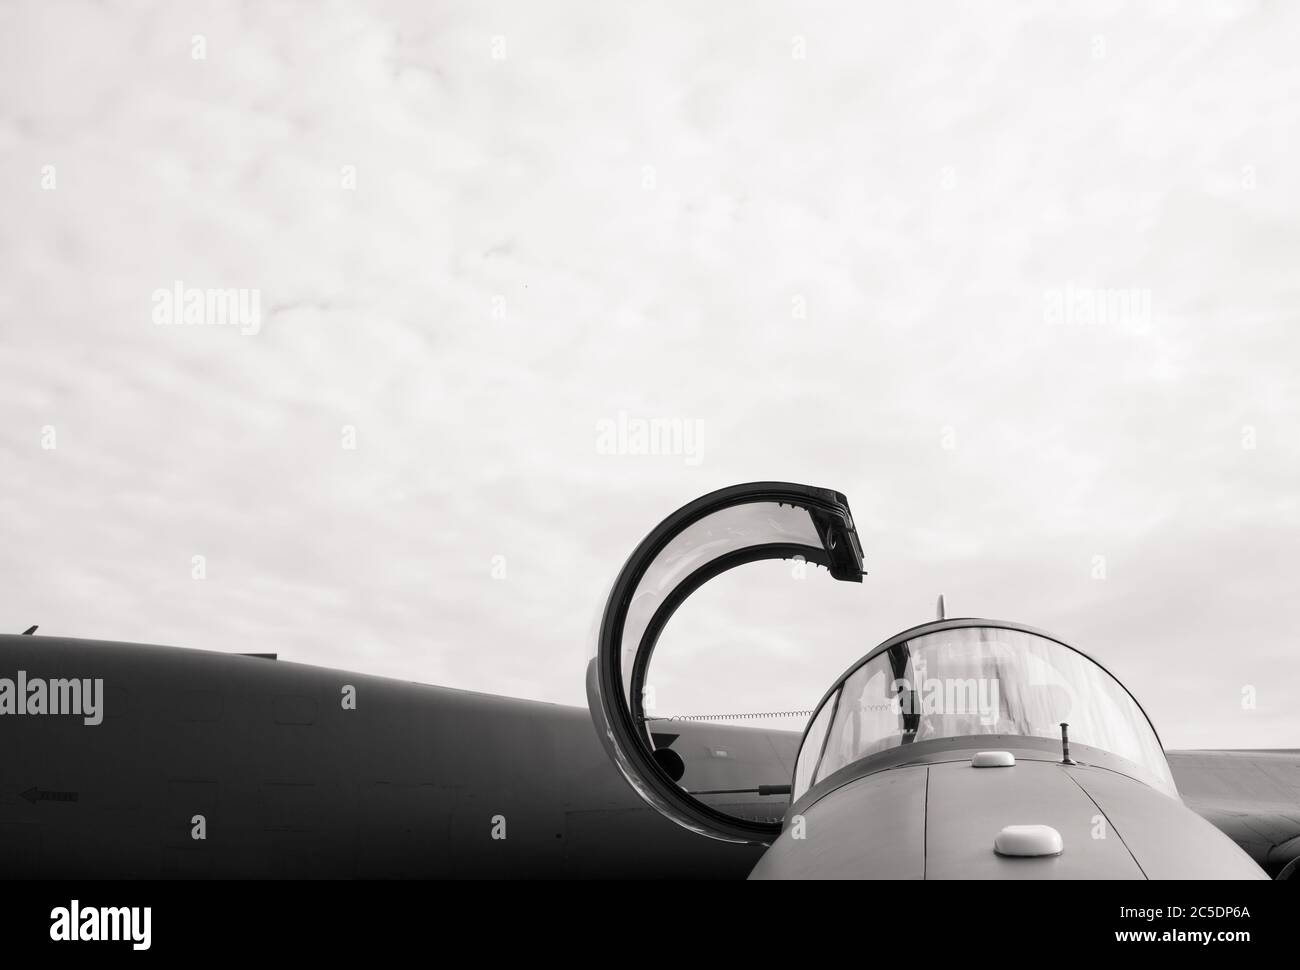 Détail de l'avion de chasse militaire depuis l'avant - le cockpit de l'avion est ouvert et préparé pour le pilote. Noir et blanc, espace de copie Banque D'Images